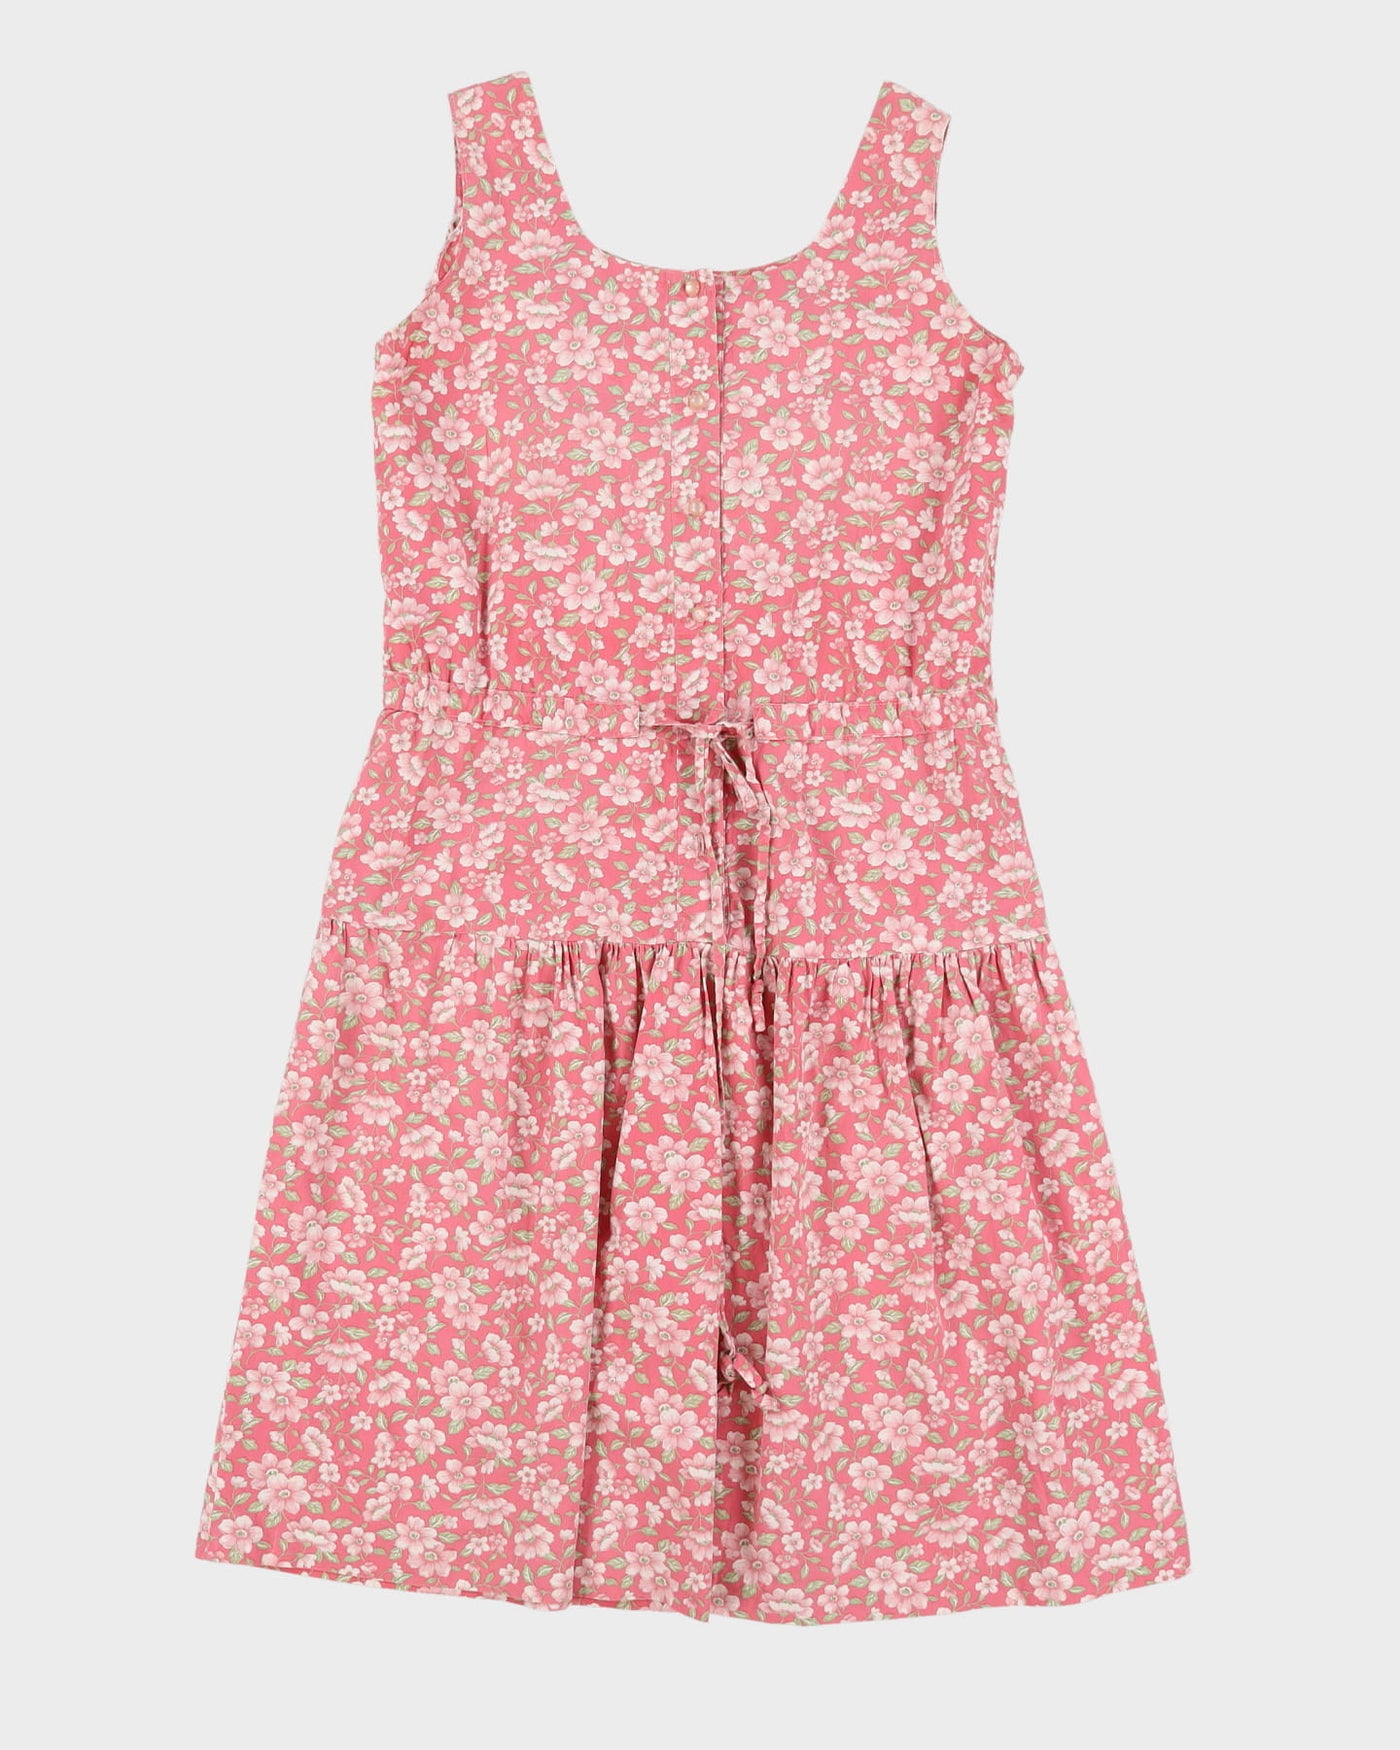 Pink Patterned Sleeveless Dress - M